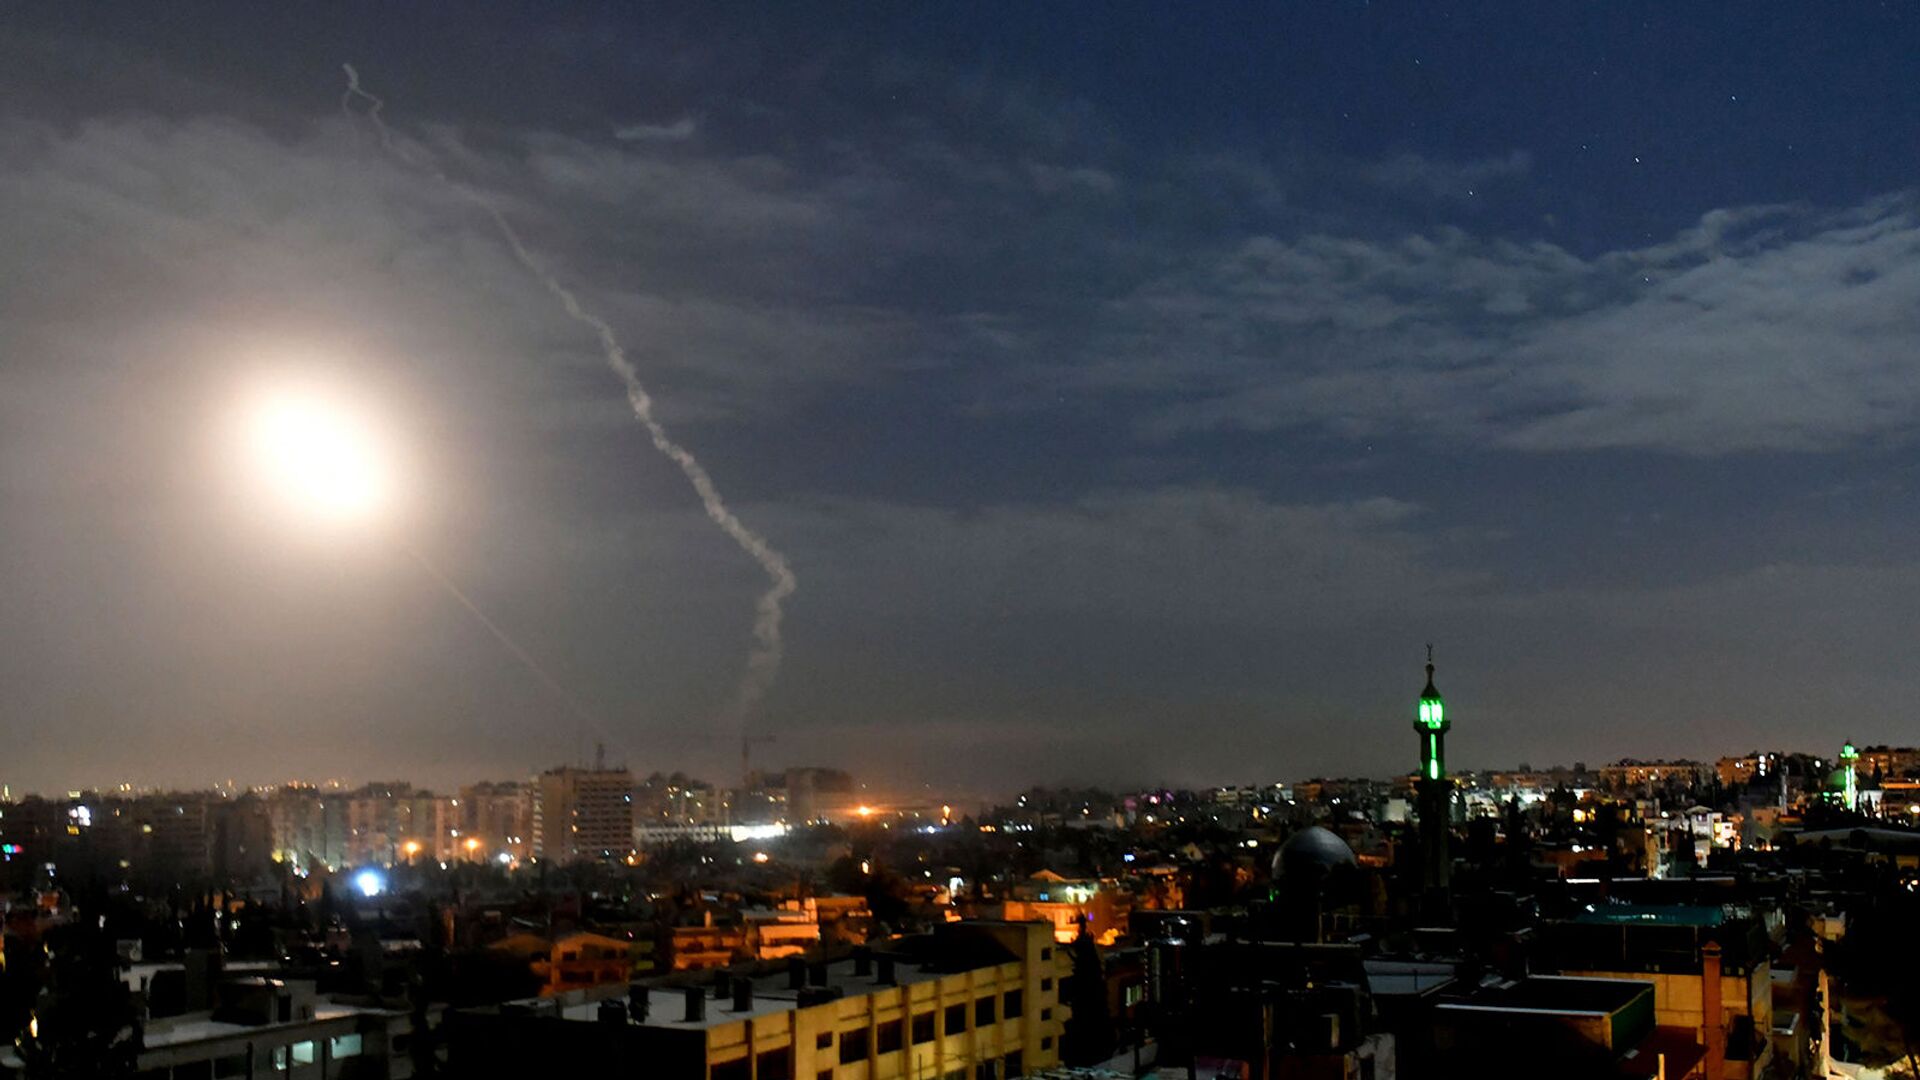 Ракеты, летящие в небе рядом с международным аэропортом в Дамаске (21 января 2019). Сирия - Sputnik Армения, 1920, 01.03.2021